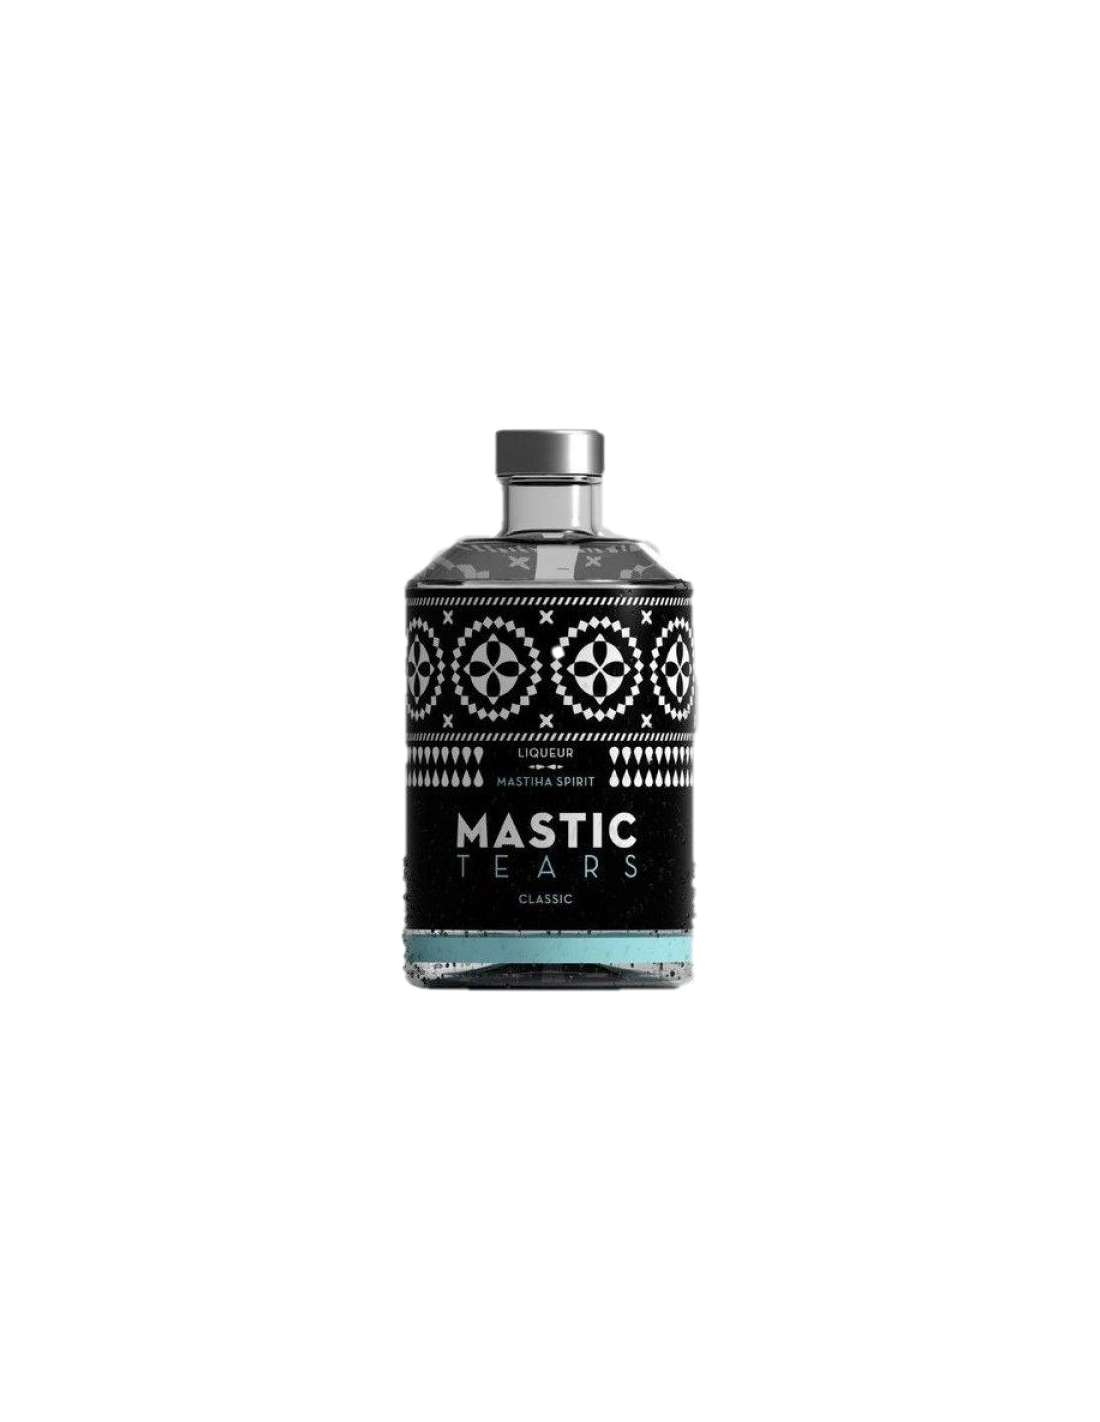 Lichior Mastic Tears Clasic, 24% alc., 0.2L, Grecia alcooldiscount.ro